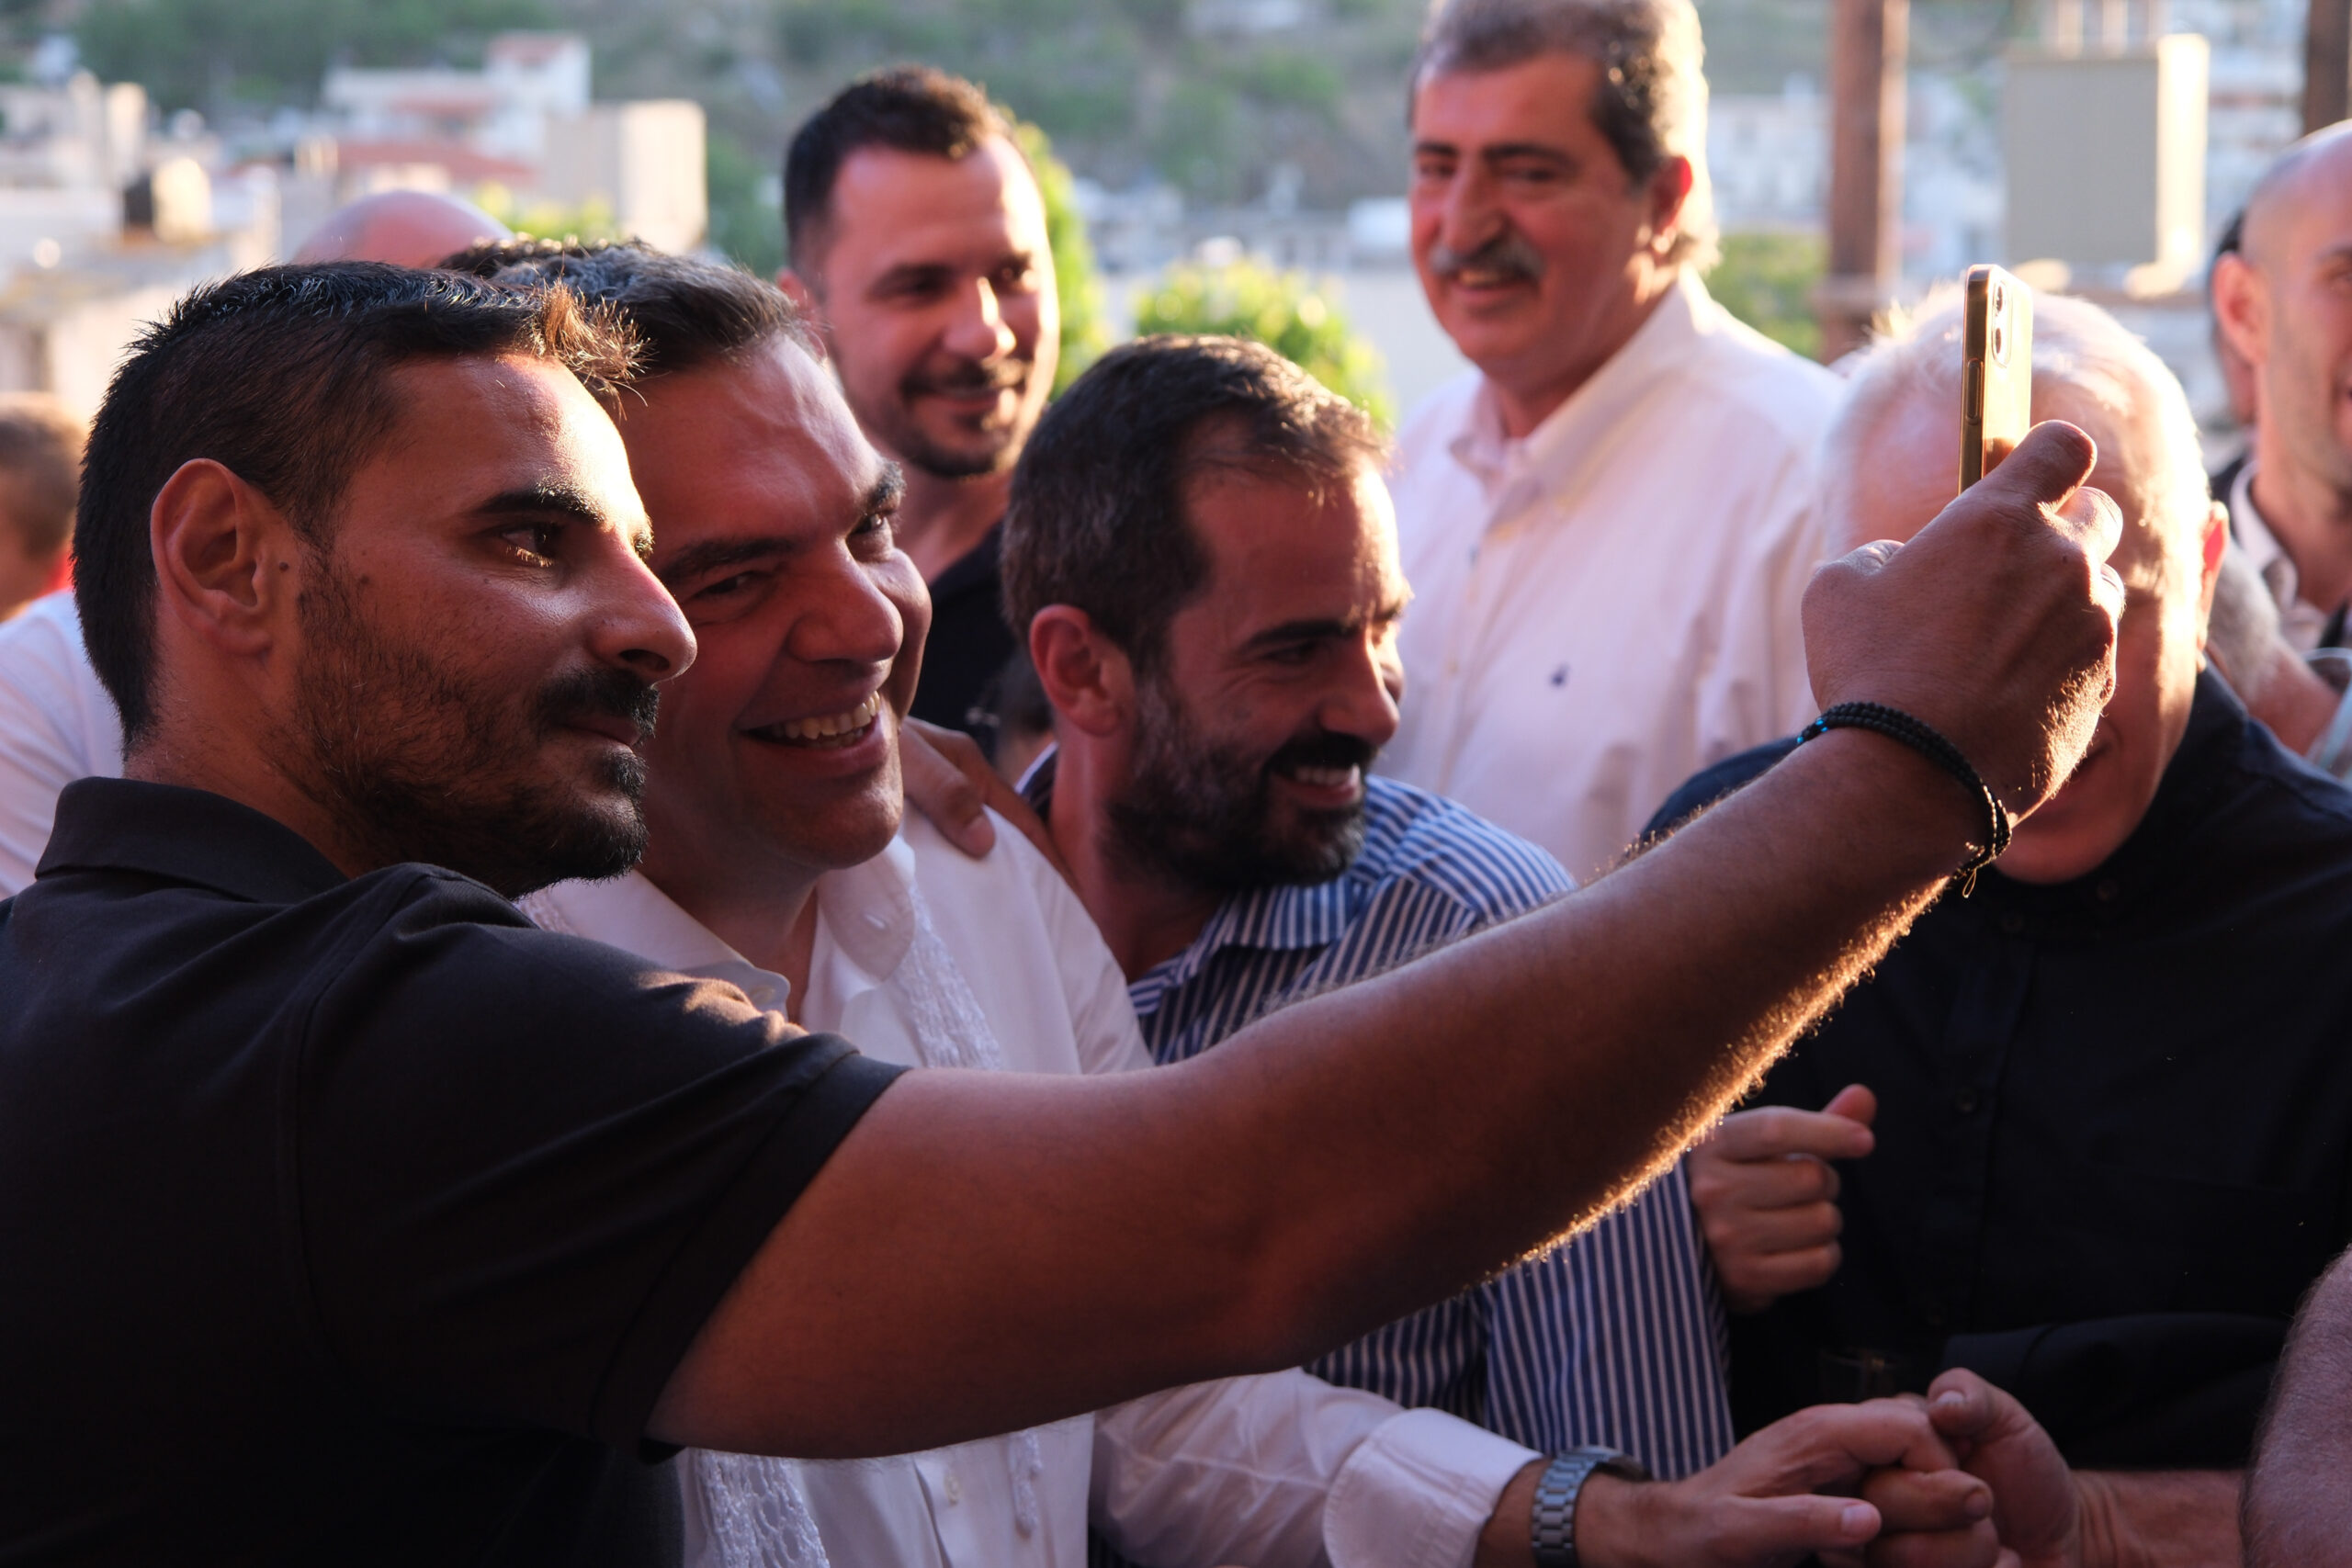 Αλ. Τσίπρας από Ανώγεια: «Κάθε ψήφος προοδευτικού πολίτη που δεν θα πάει στον ΣΥΡΙΖΑ αντικειμενικά ευνοεί το σχέδιο του κ. Μητσοτάκη»